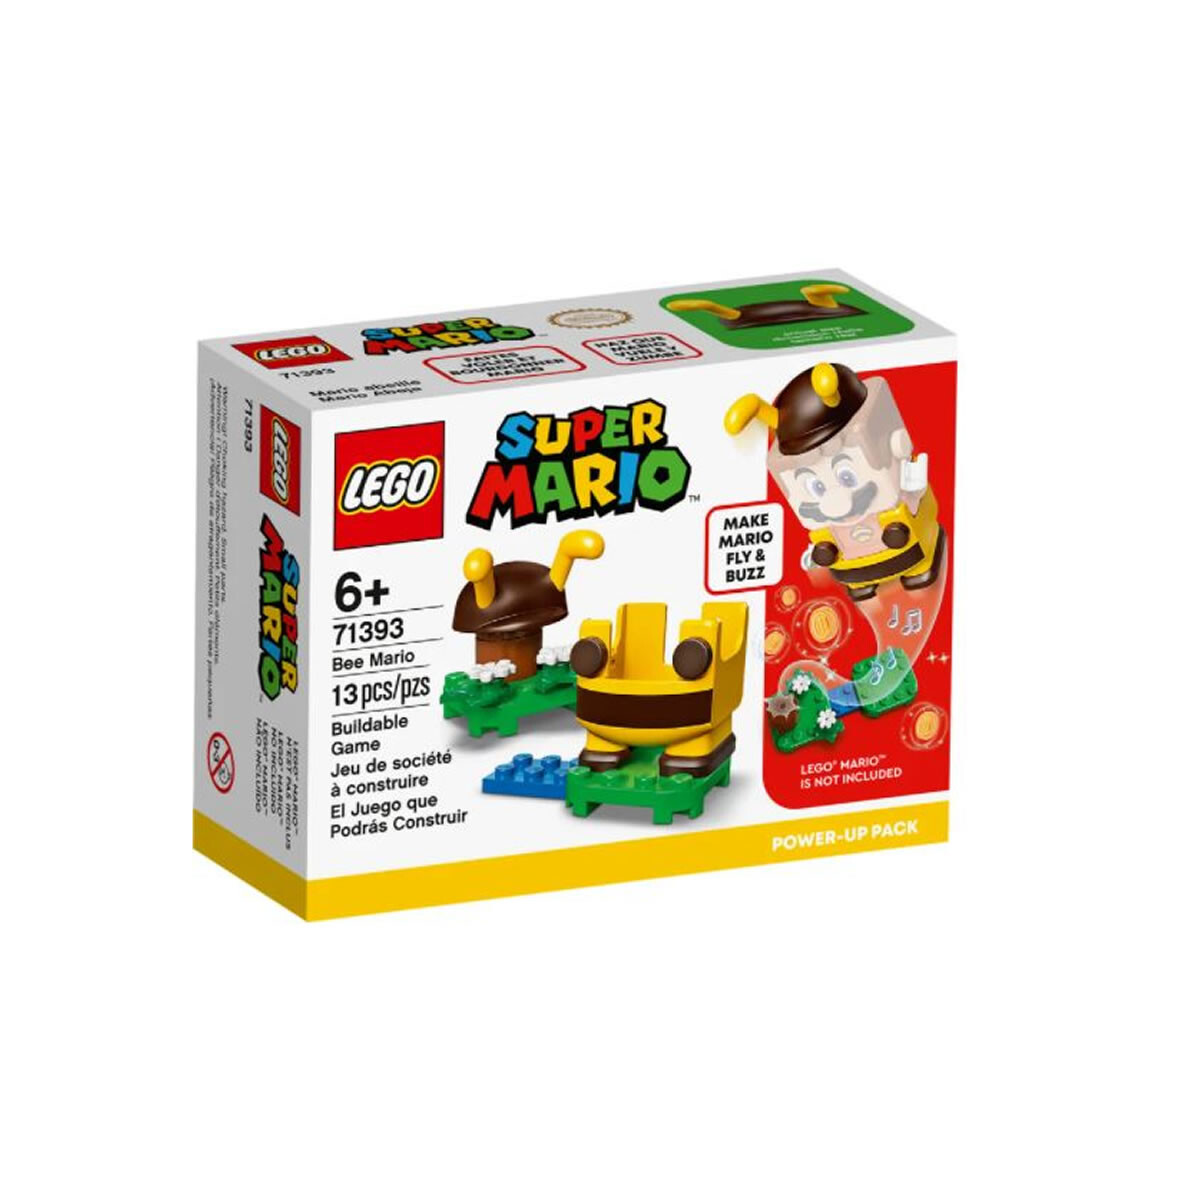 LEGO SUPER MARIO 13 Pzs 